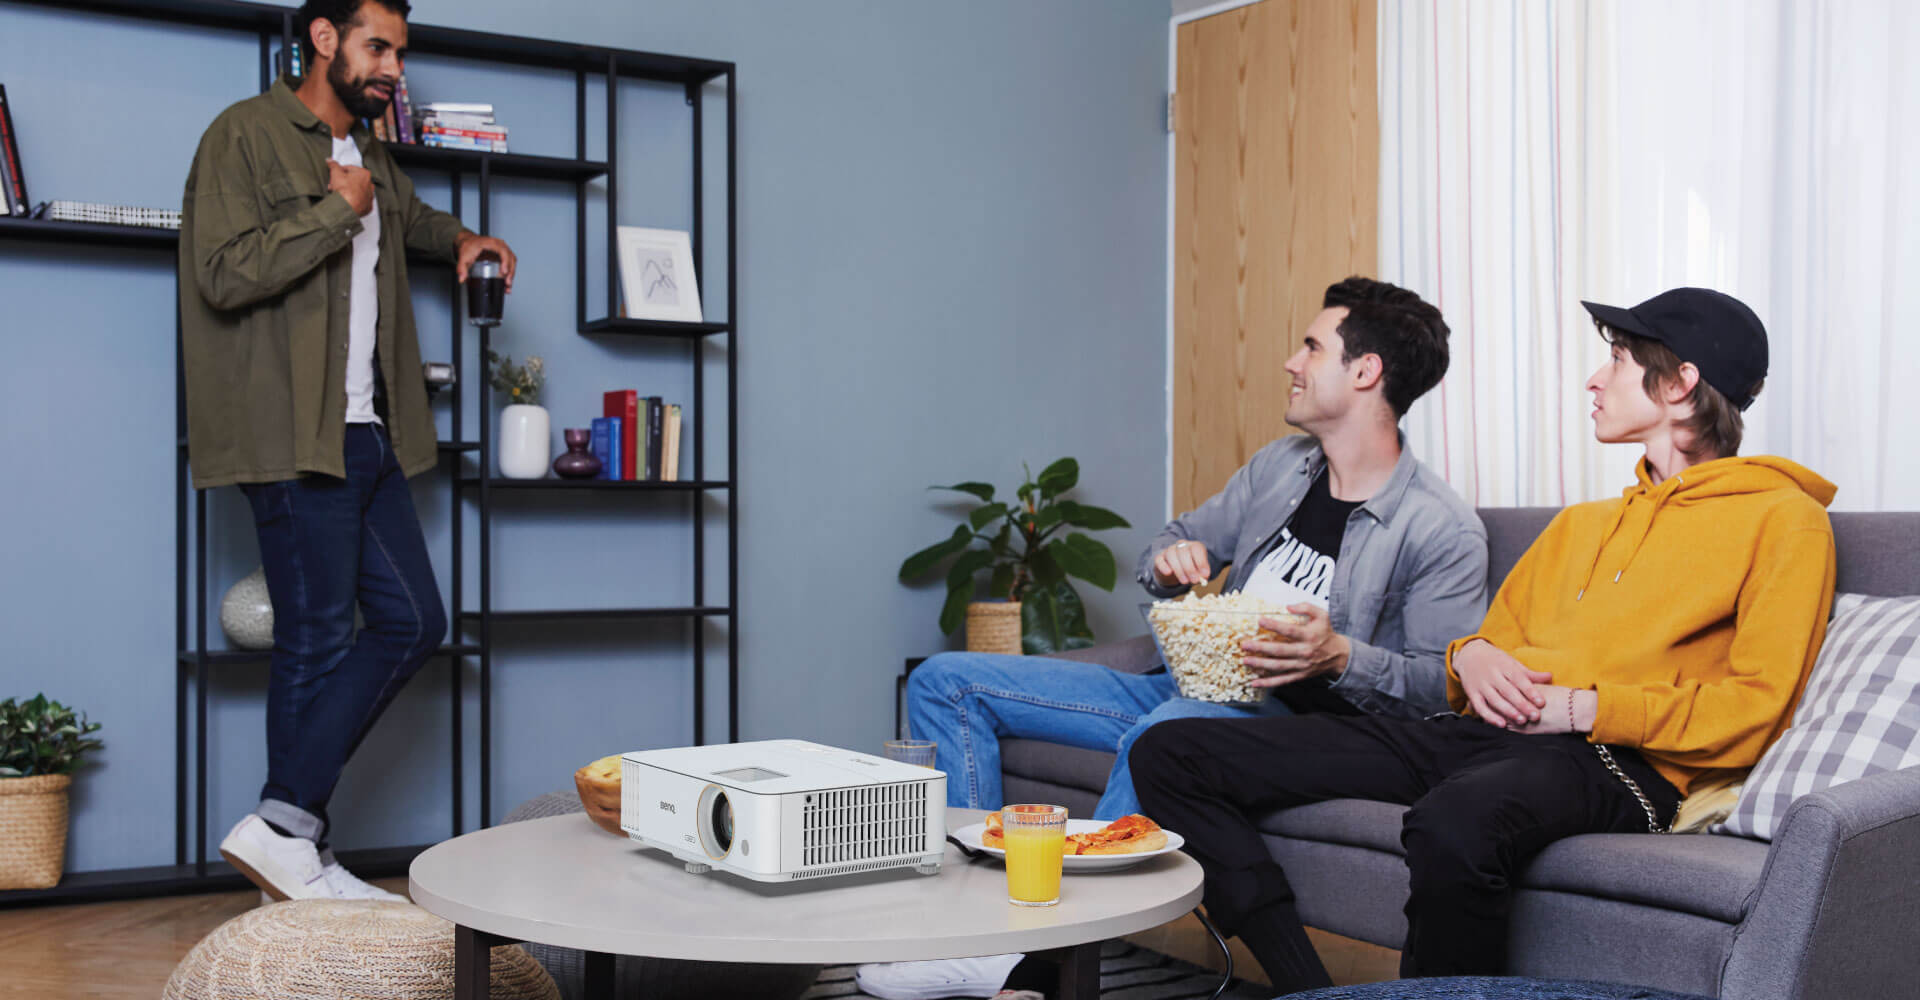 Tres hombres teniendo una pequeña charla en la sala de estar con palomitas de maíz, con el proyector sobre la mesa